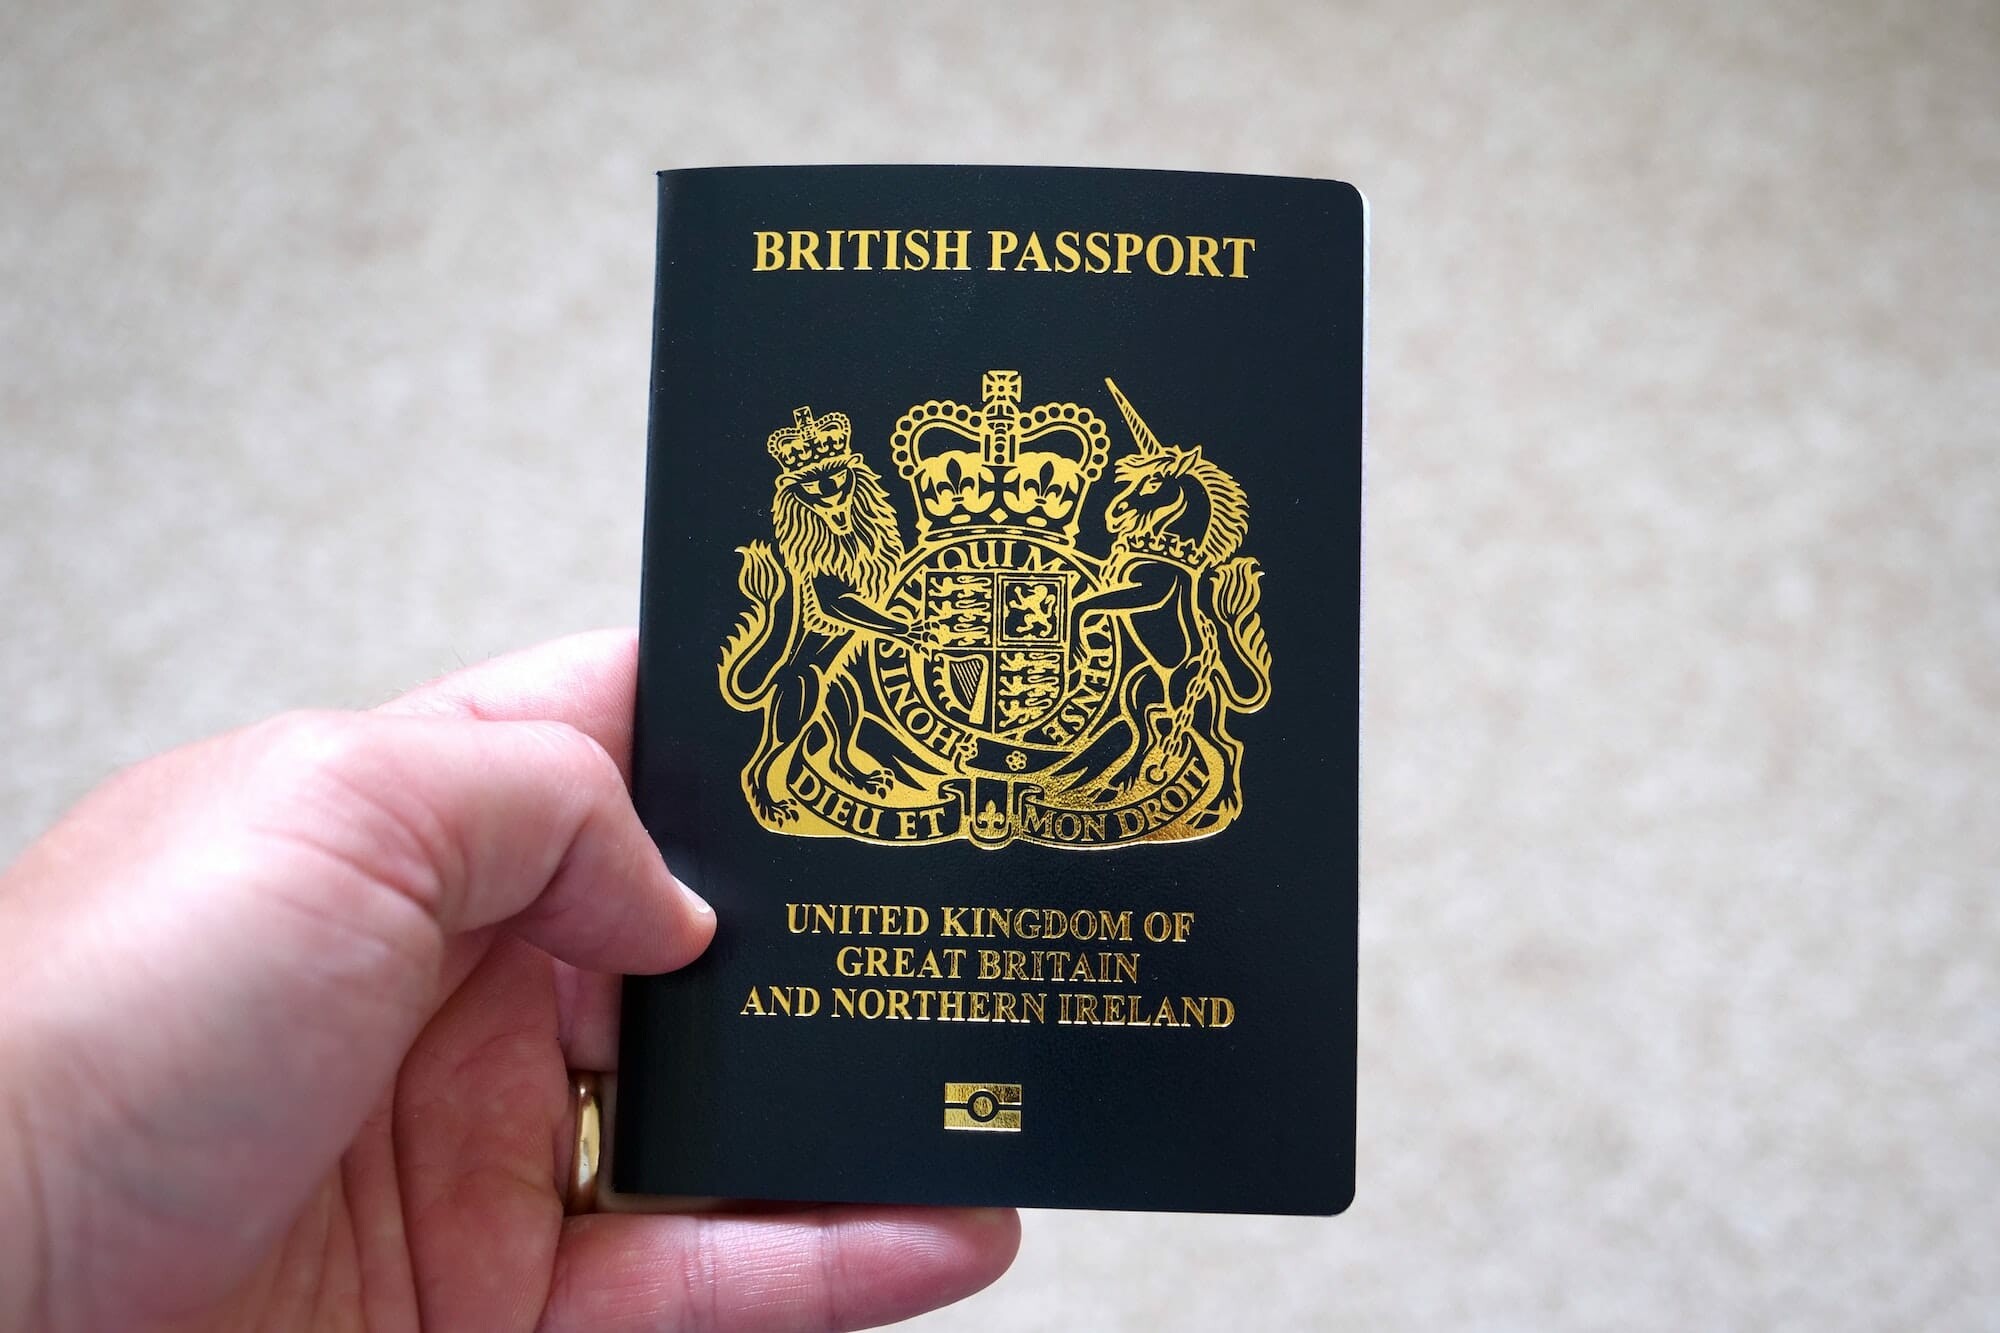 مميزات جواز السفر البريطاني وشروط الحصول عليه 